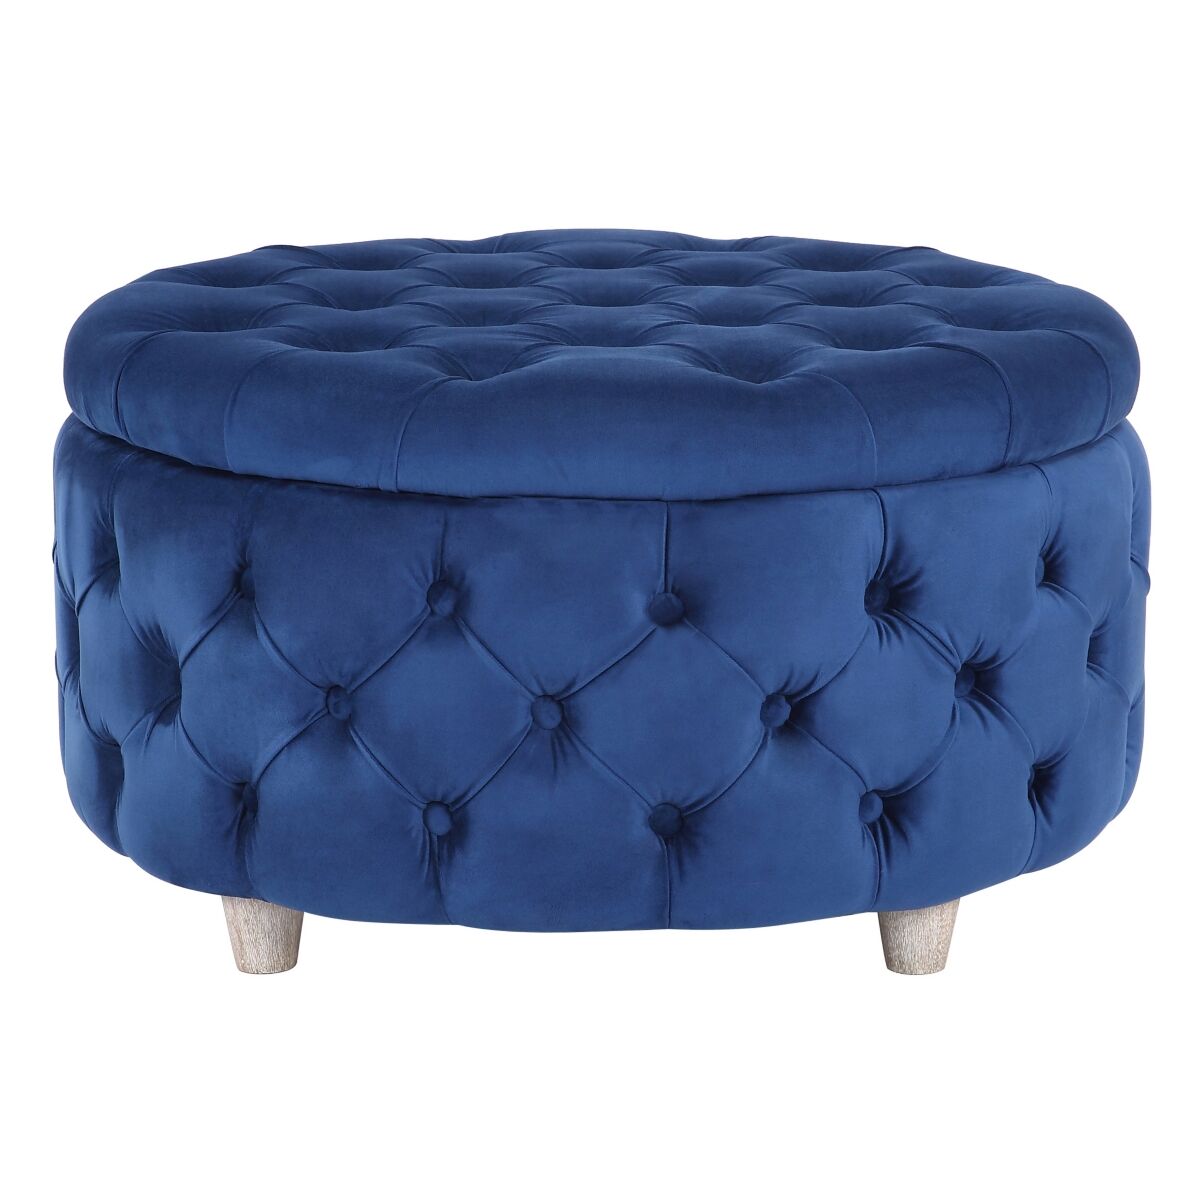 Westintrends Round Velvet Tufted Storage Ottoman for Living Room Bedroom - Velvet Royal Blue